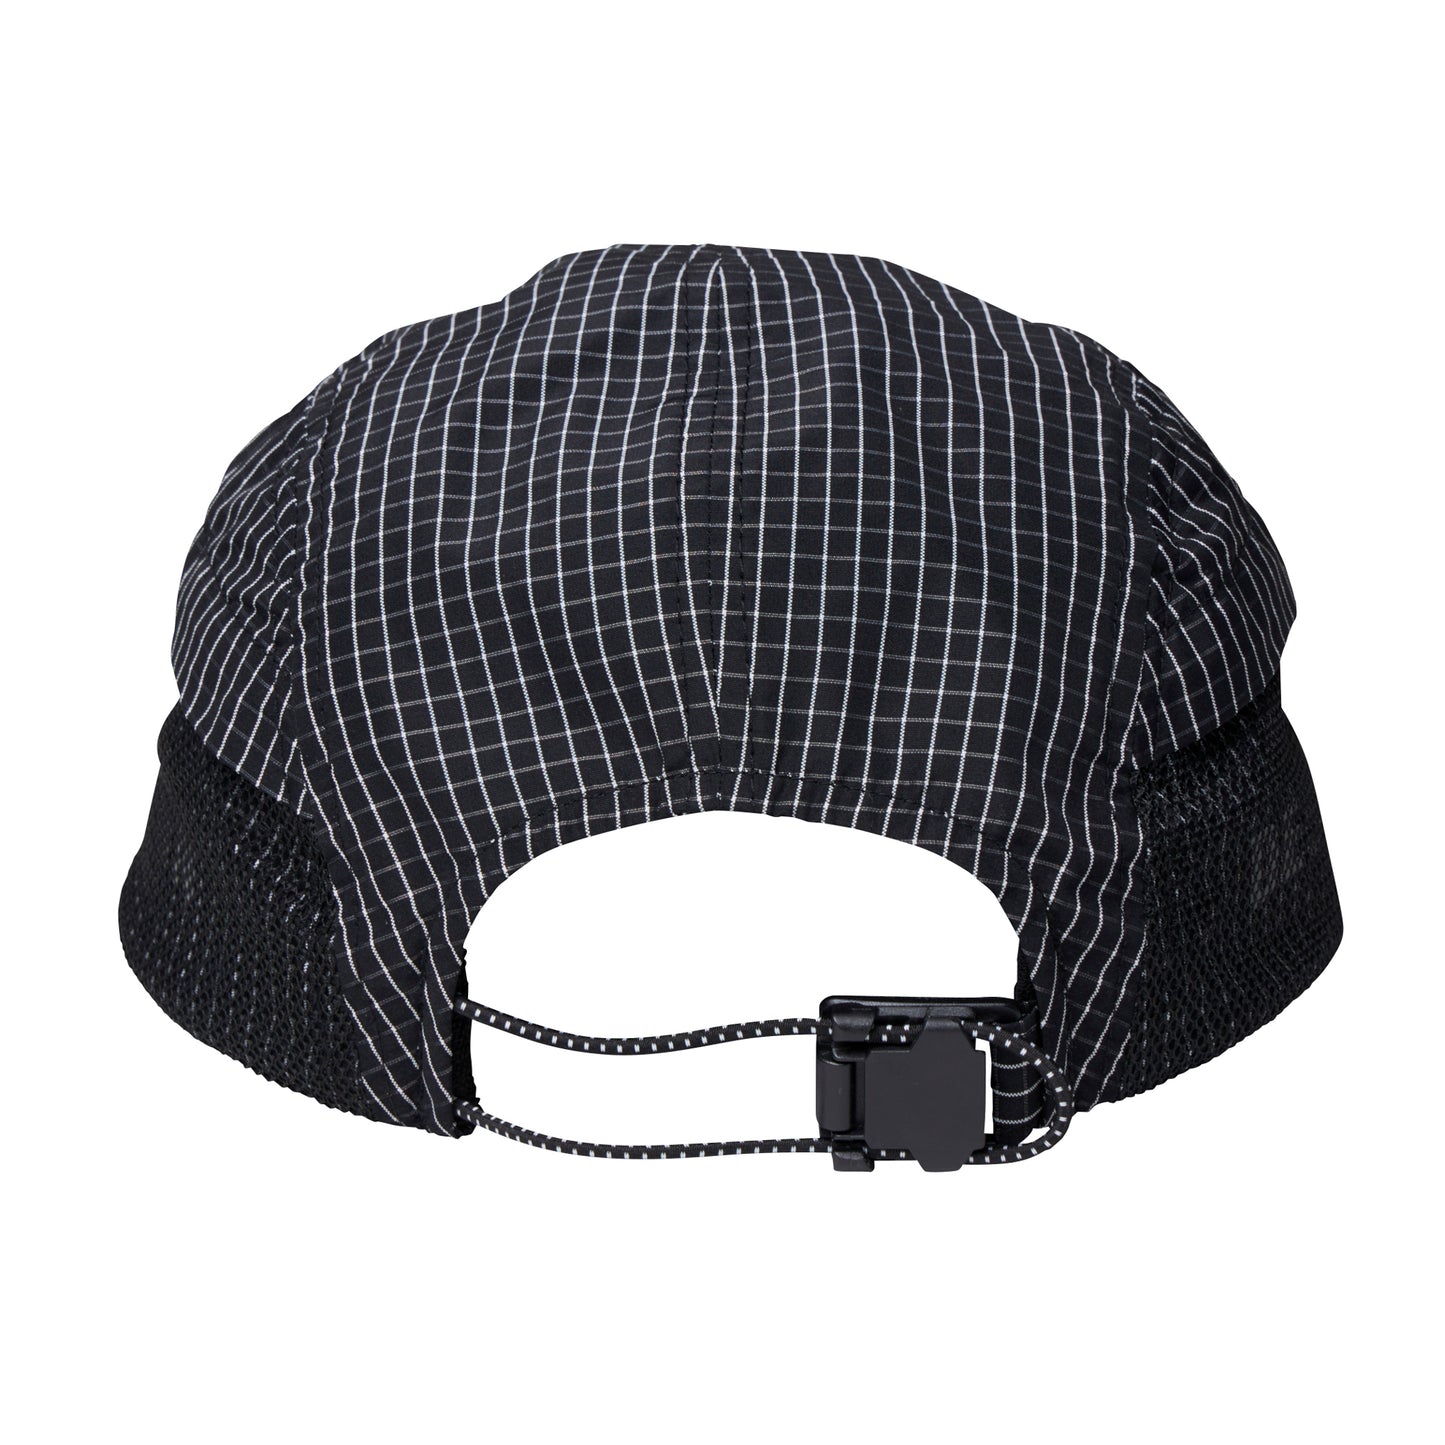 Liberaiders ®(リベレイダース) / GRID CLOTH CAP 70901 BLACK